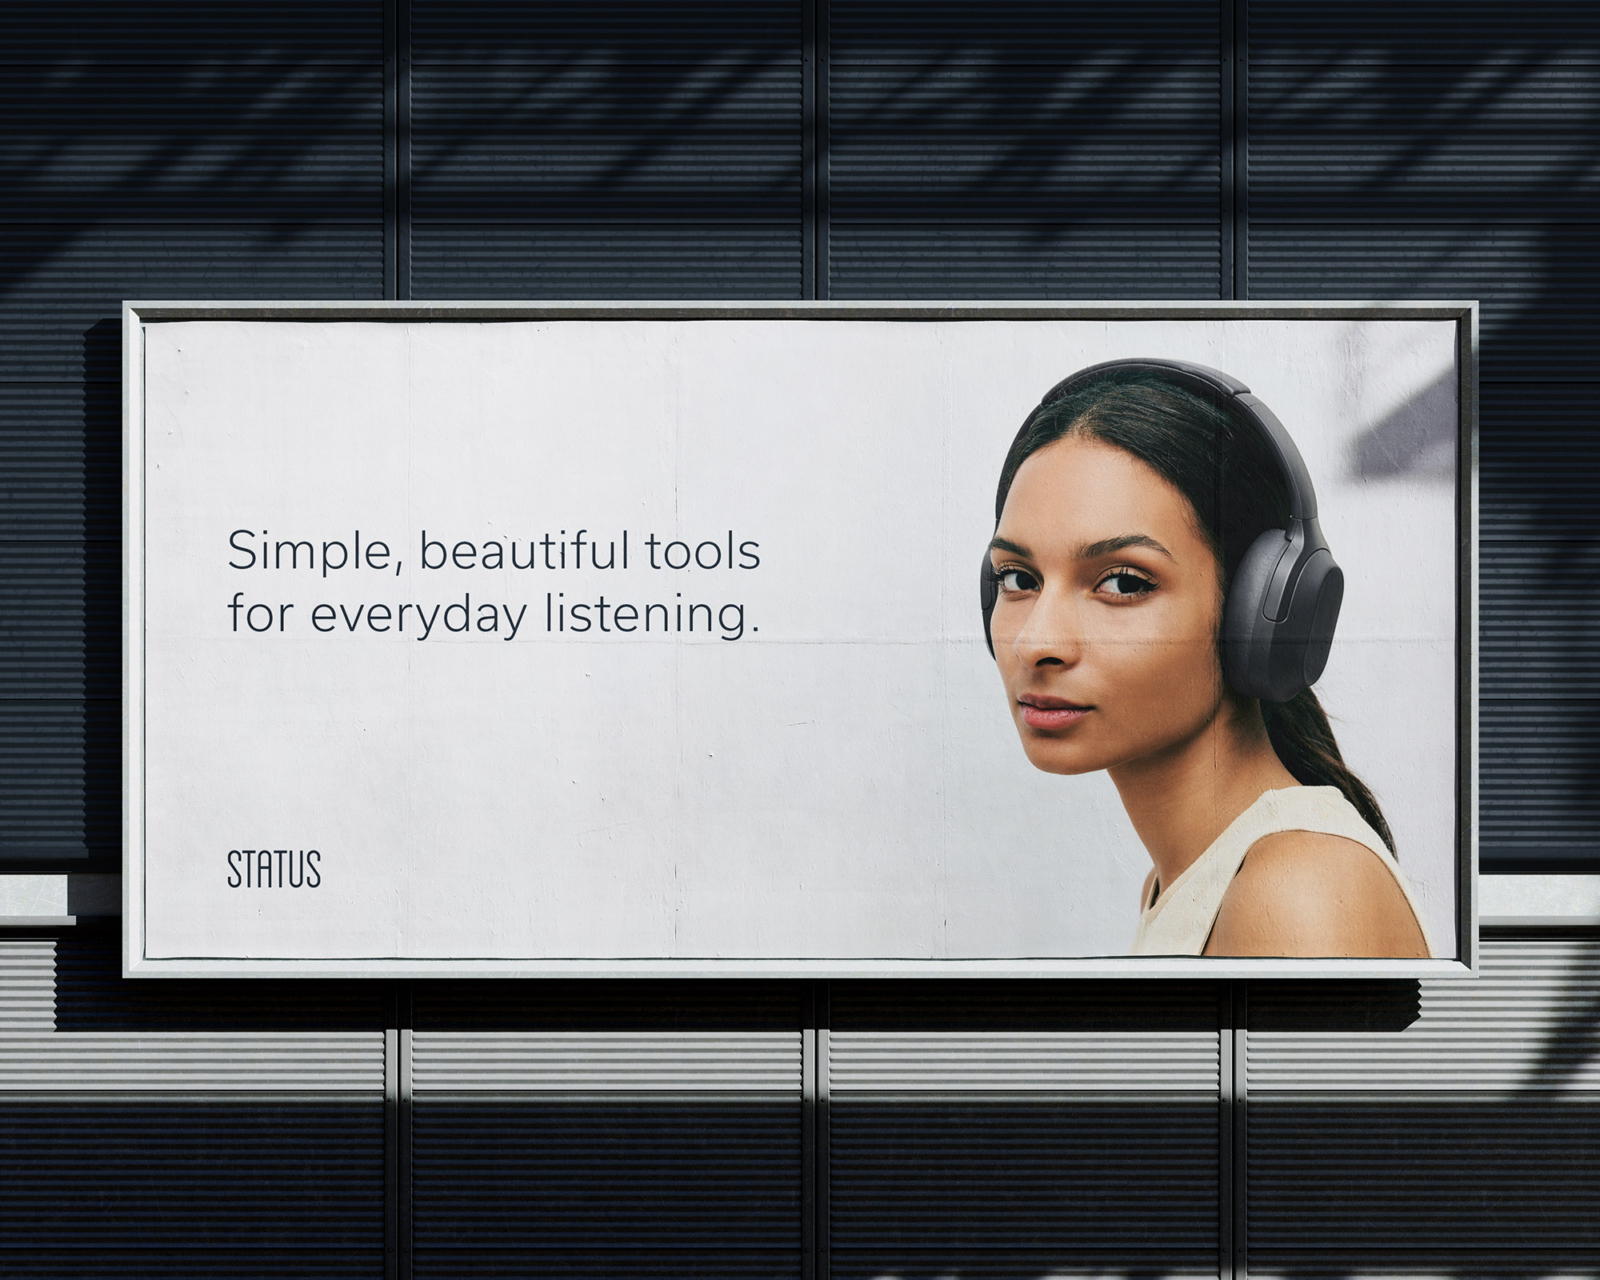 Status Audio advertisement on billboard